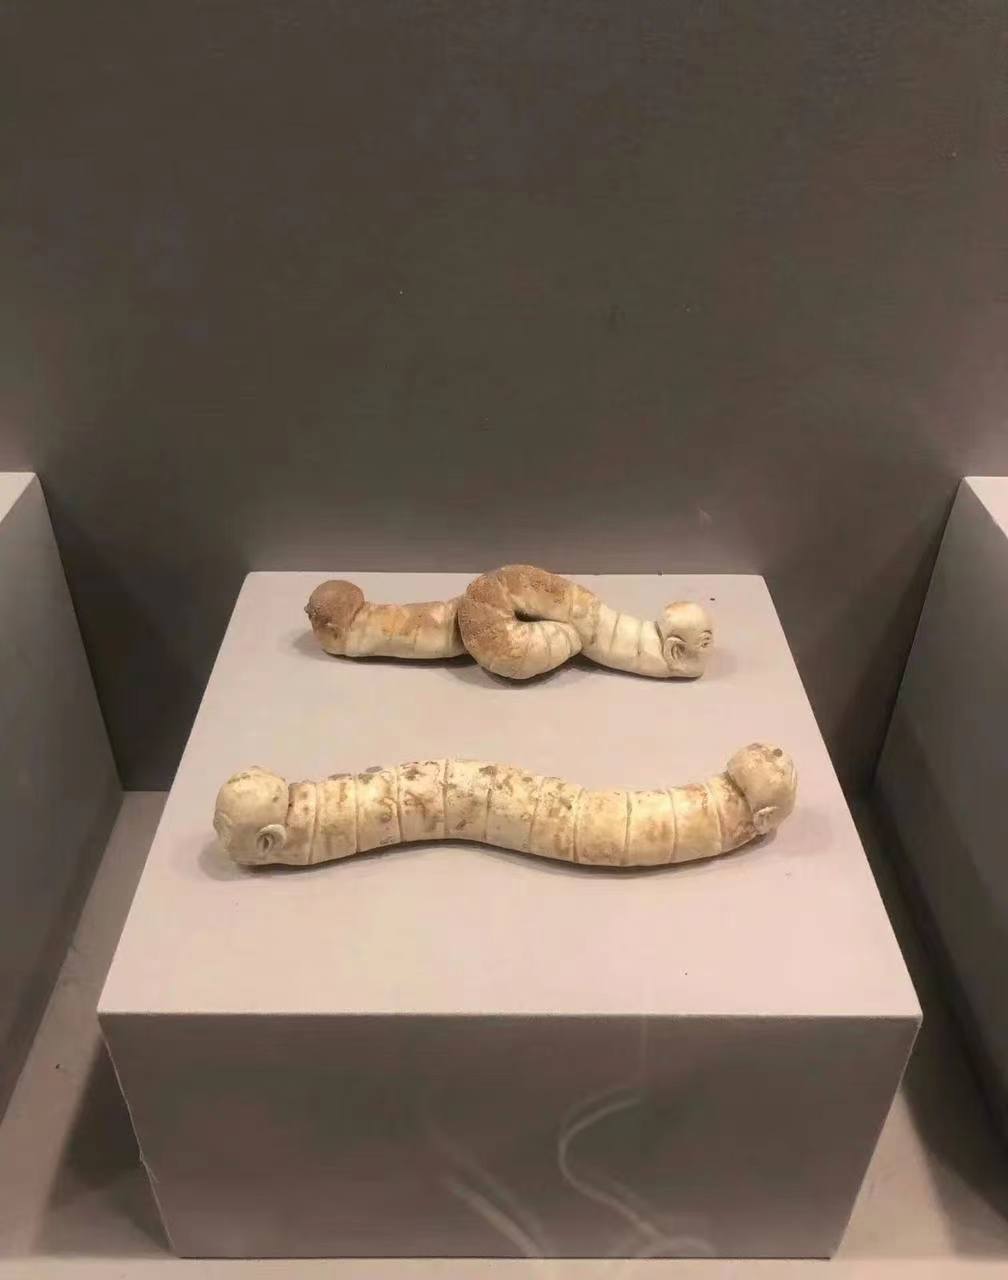 赣州市博物馆 双人首蛇身俑,也可以叫地轴,勾陈,墓龙,可能是镇墓之用